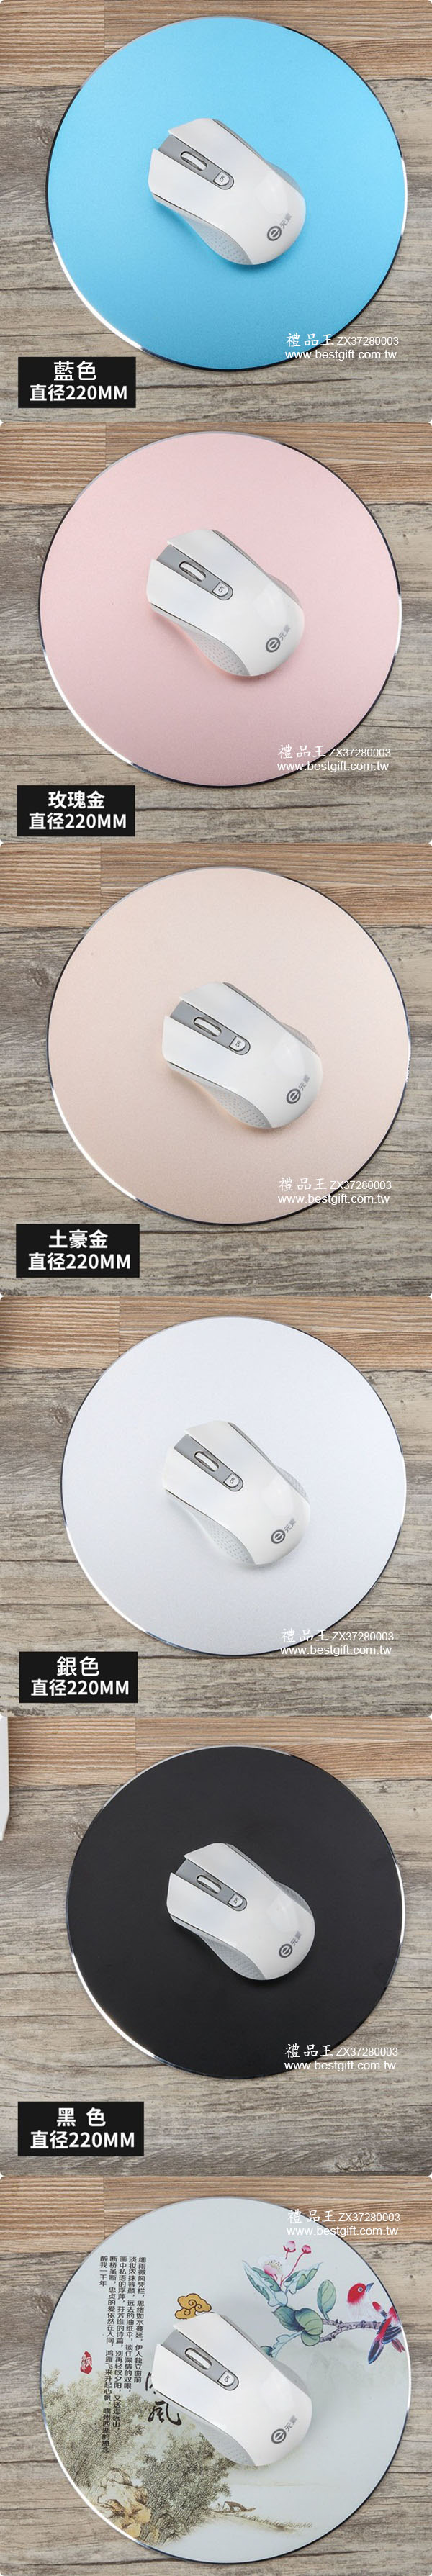 圓形鋁合金滑鼠墊    商品貨號： ZX37280003